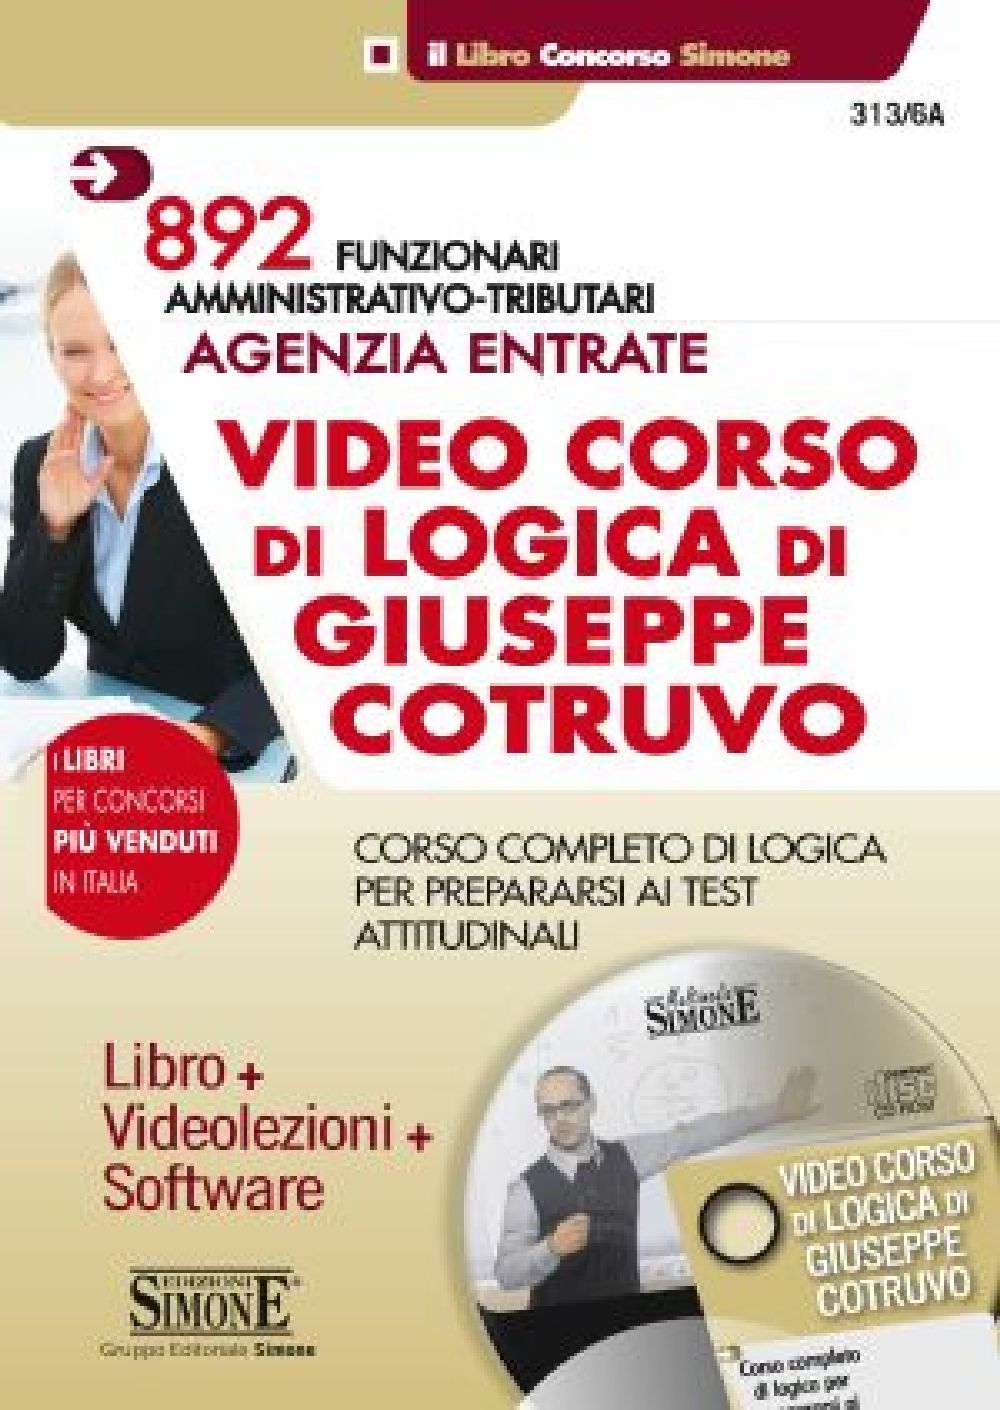 892 Funzionari Amministrativo Tributari Agenzia Entrate - Video Corso di Logica di Giuseppe Cotruvo